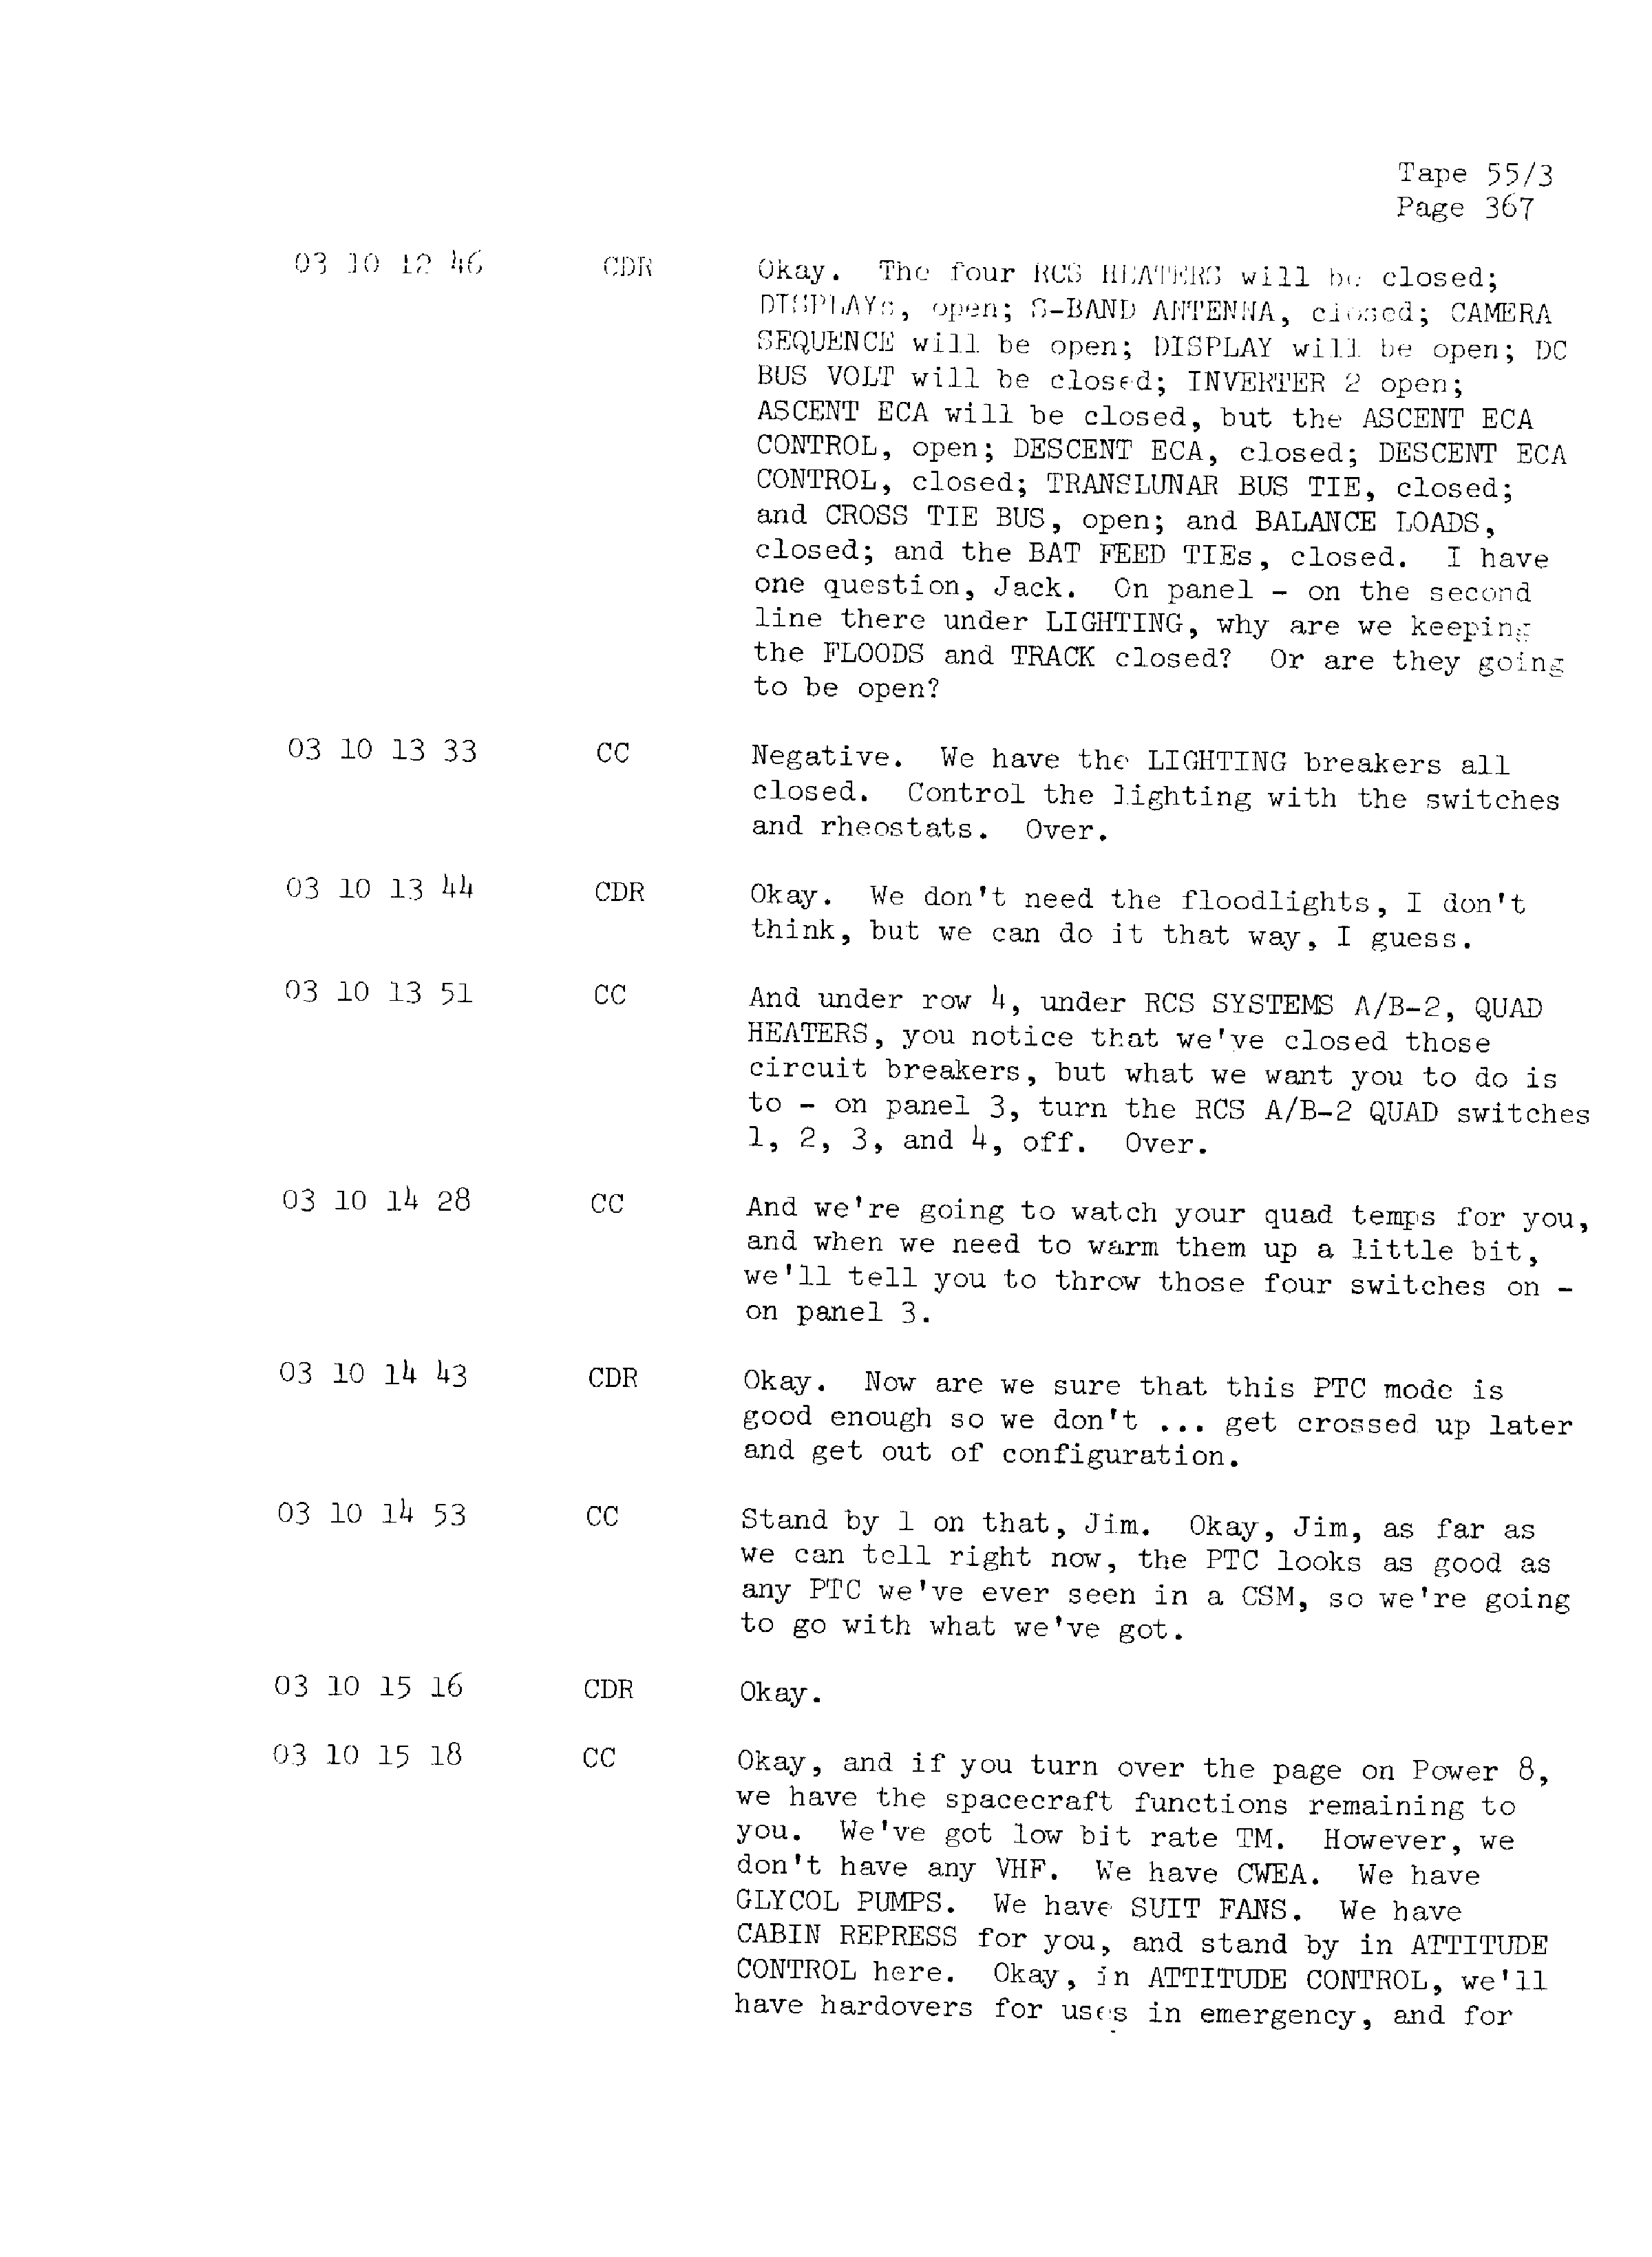 Page 374 of Apollo 13’s original transcript